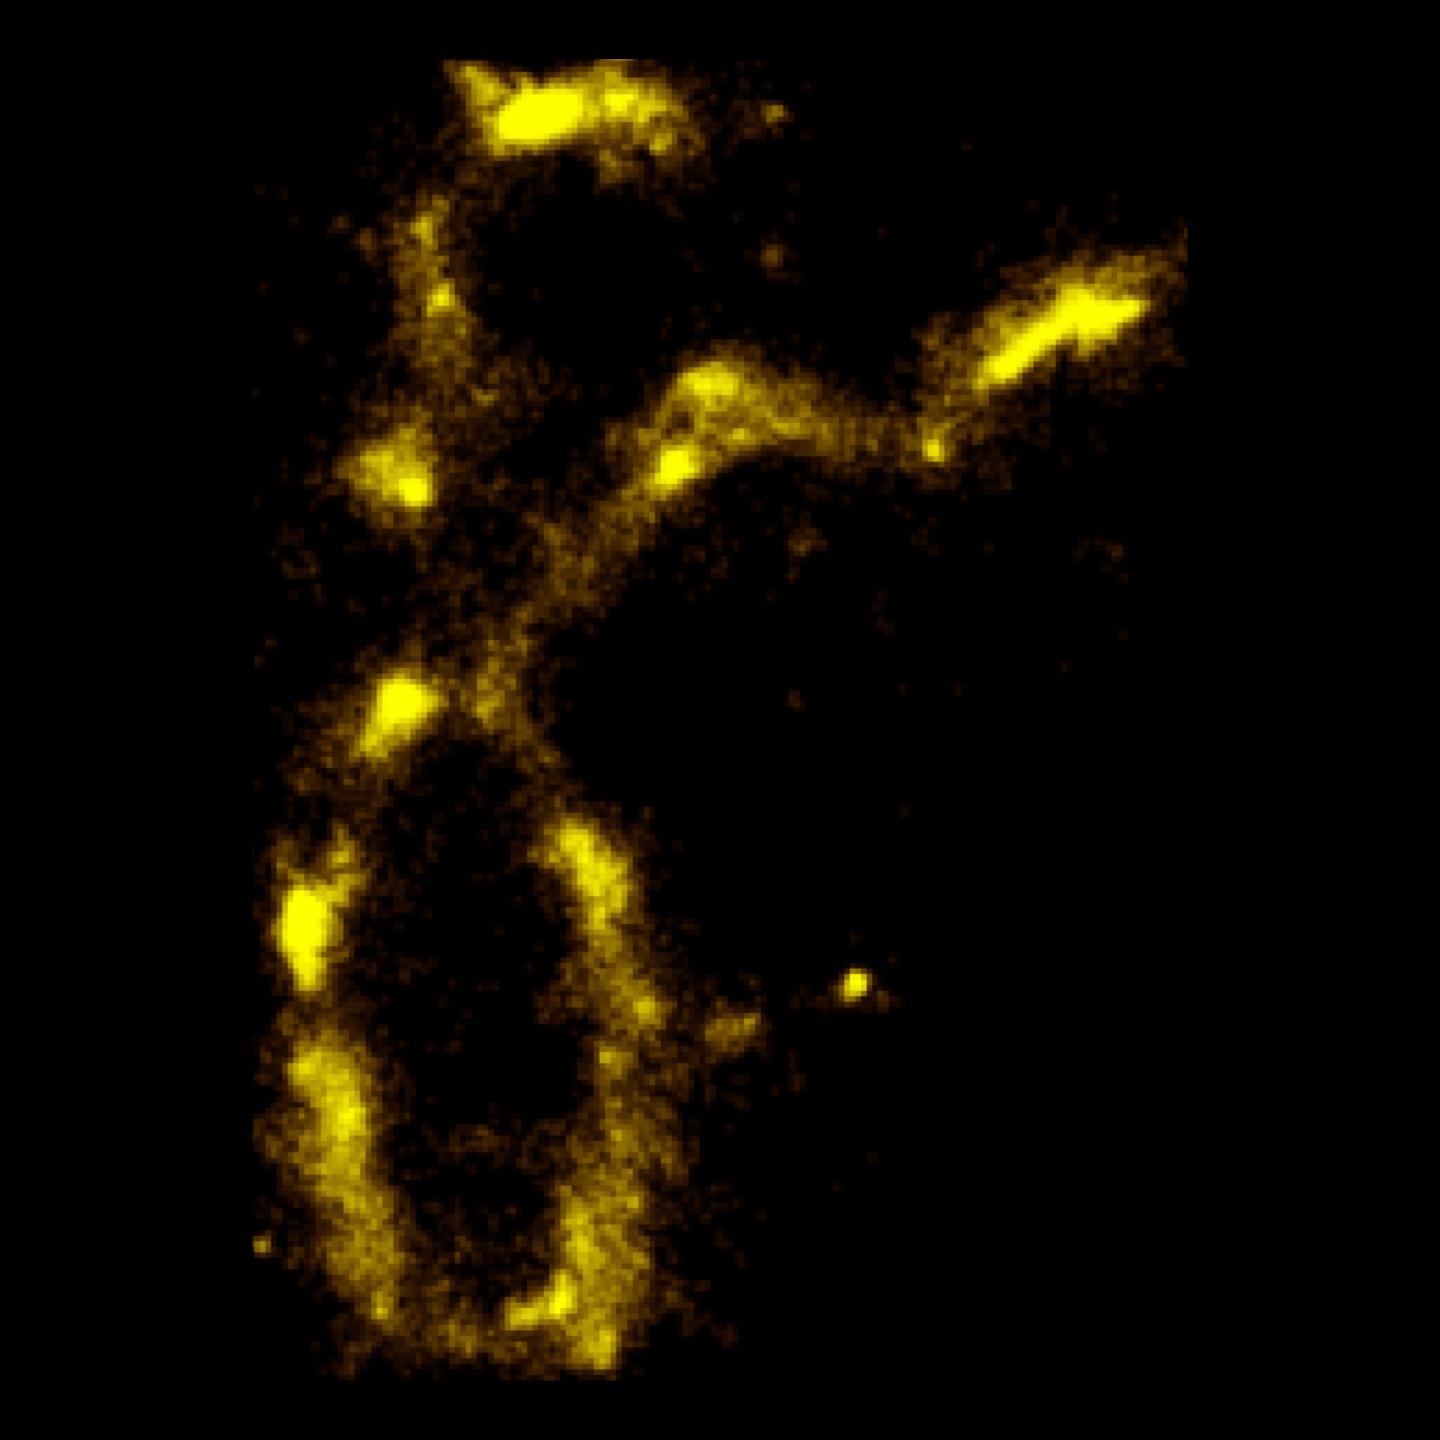 Chromosome Image